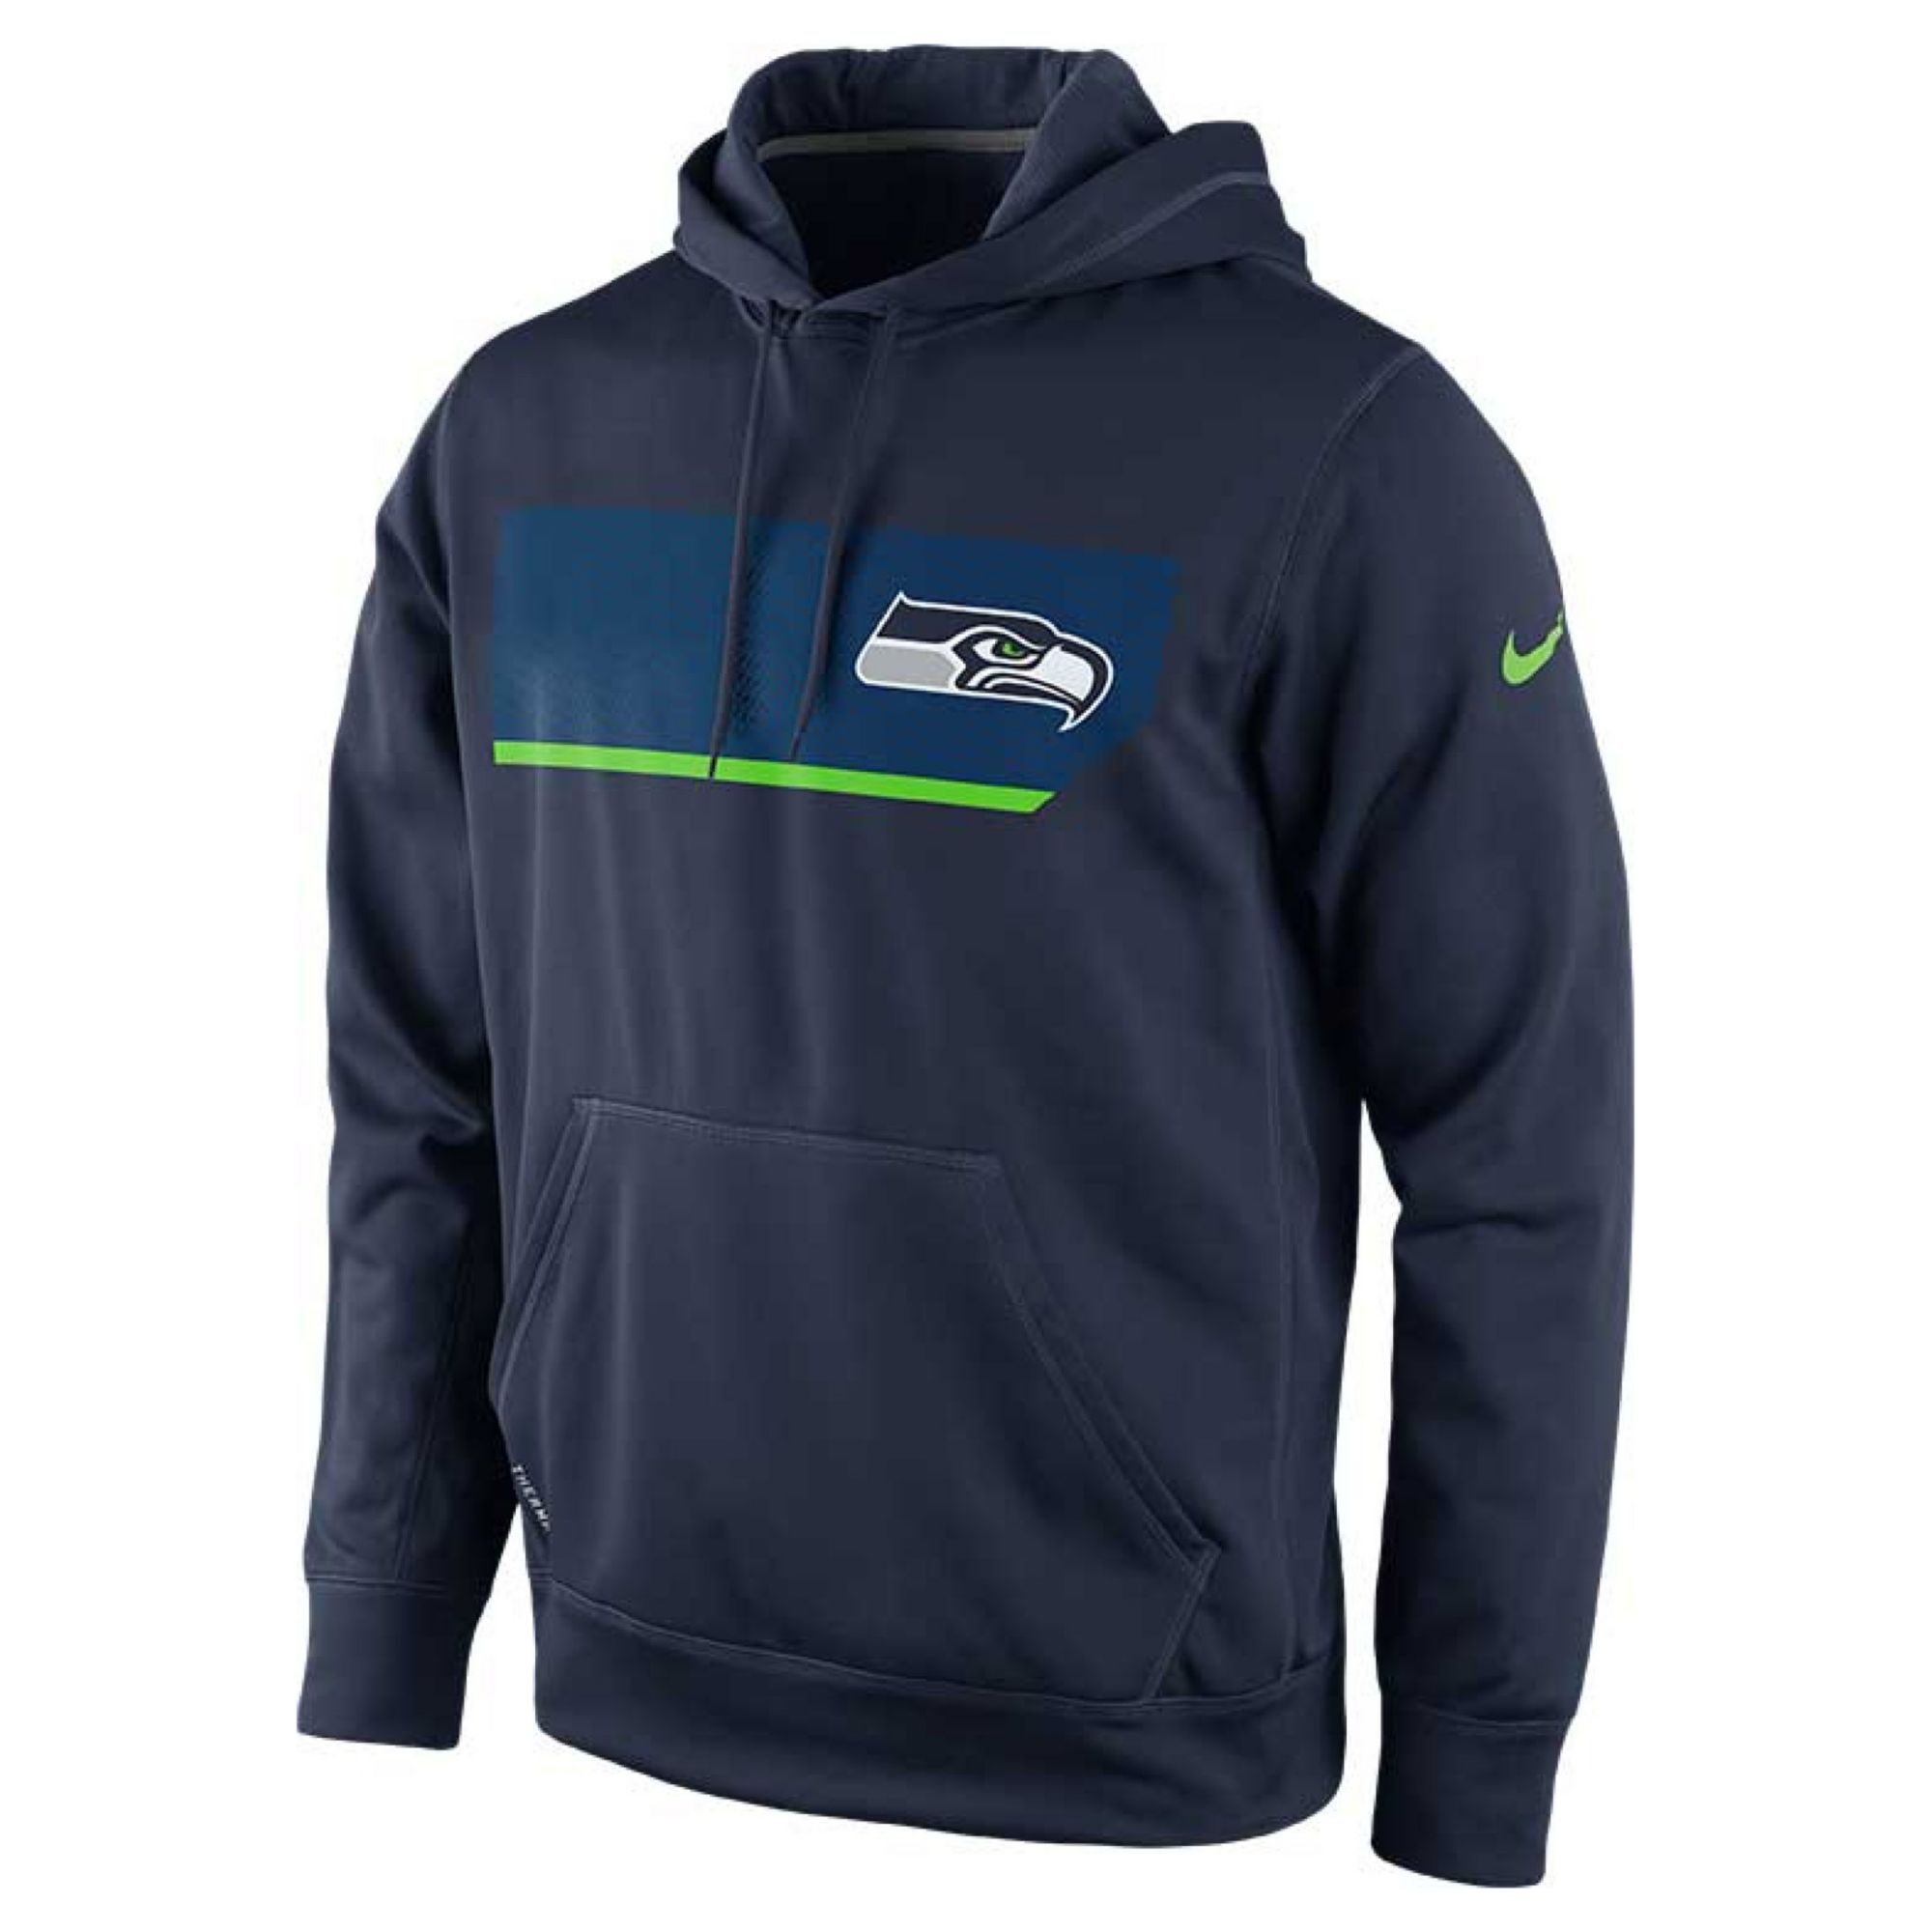 Lyst - Nike Men's Seattle Seahawks Performance Hoodie Sweatshirt in ...